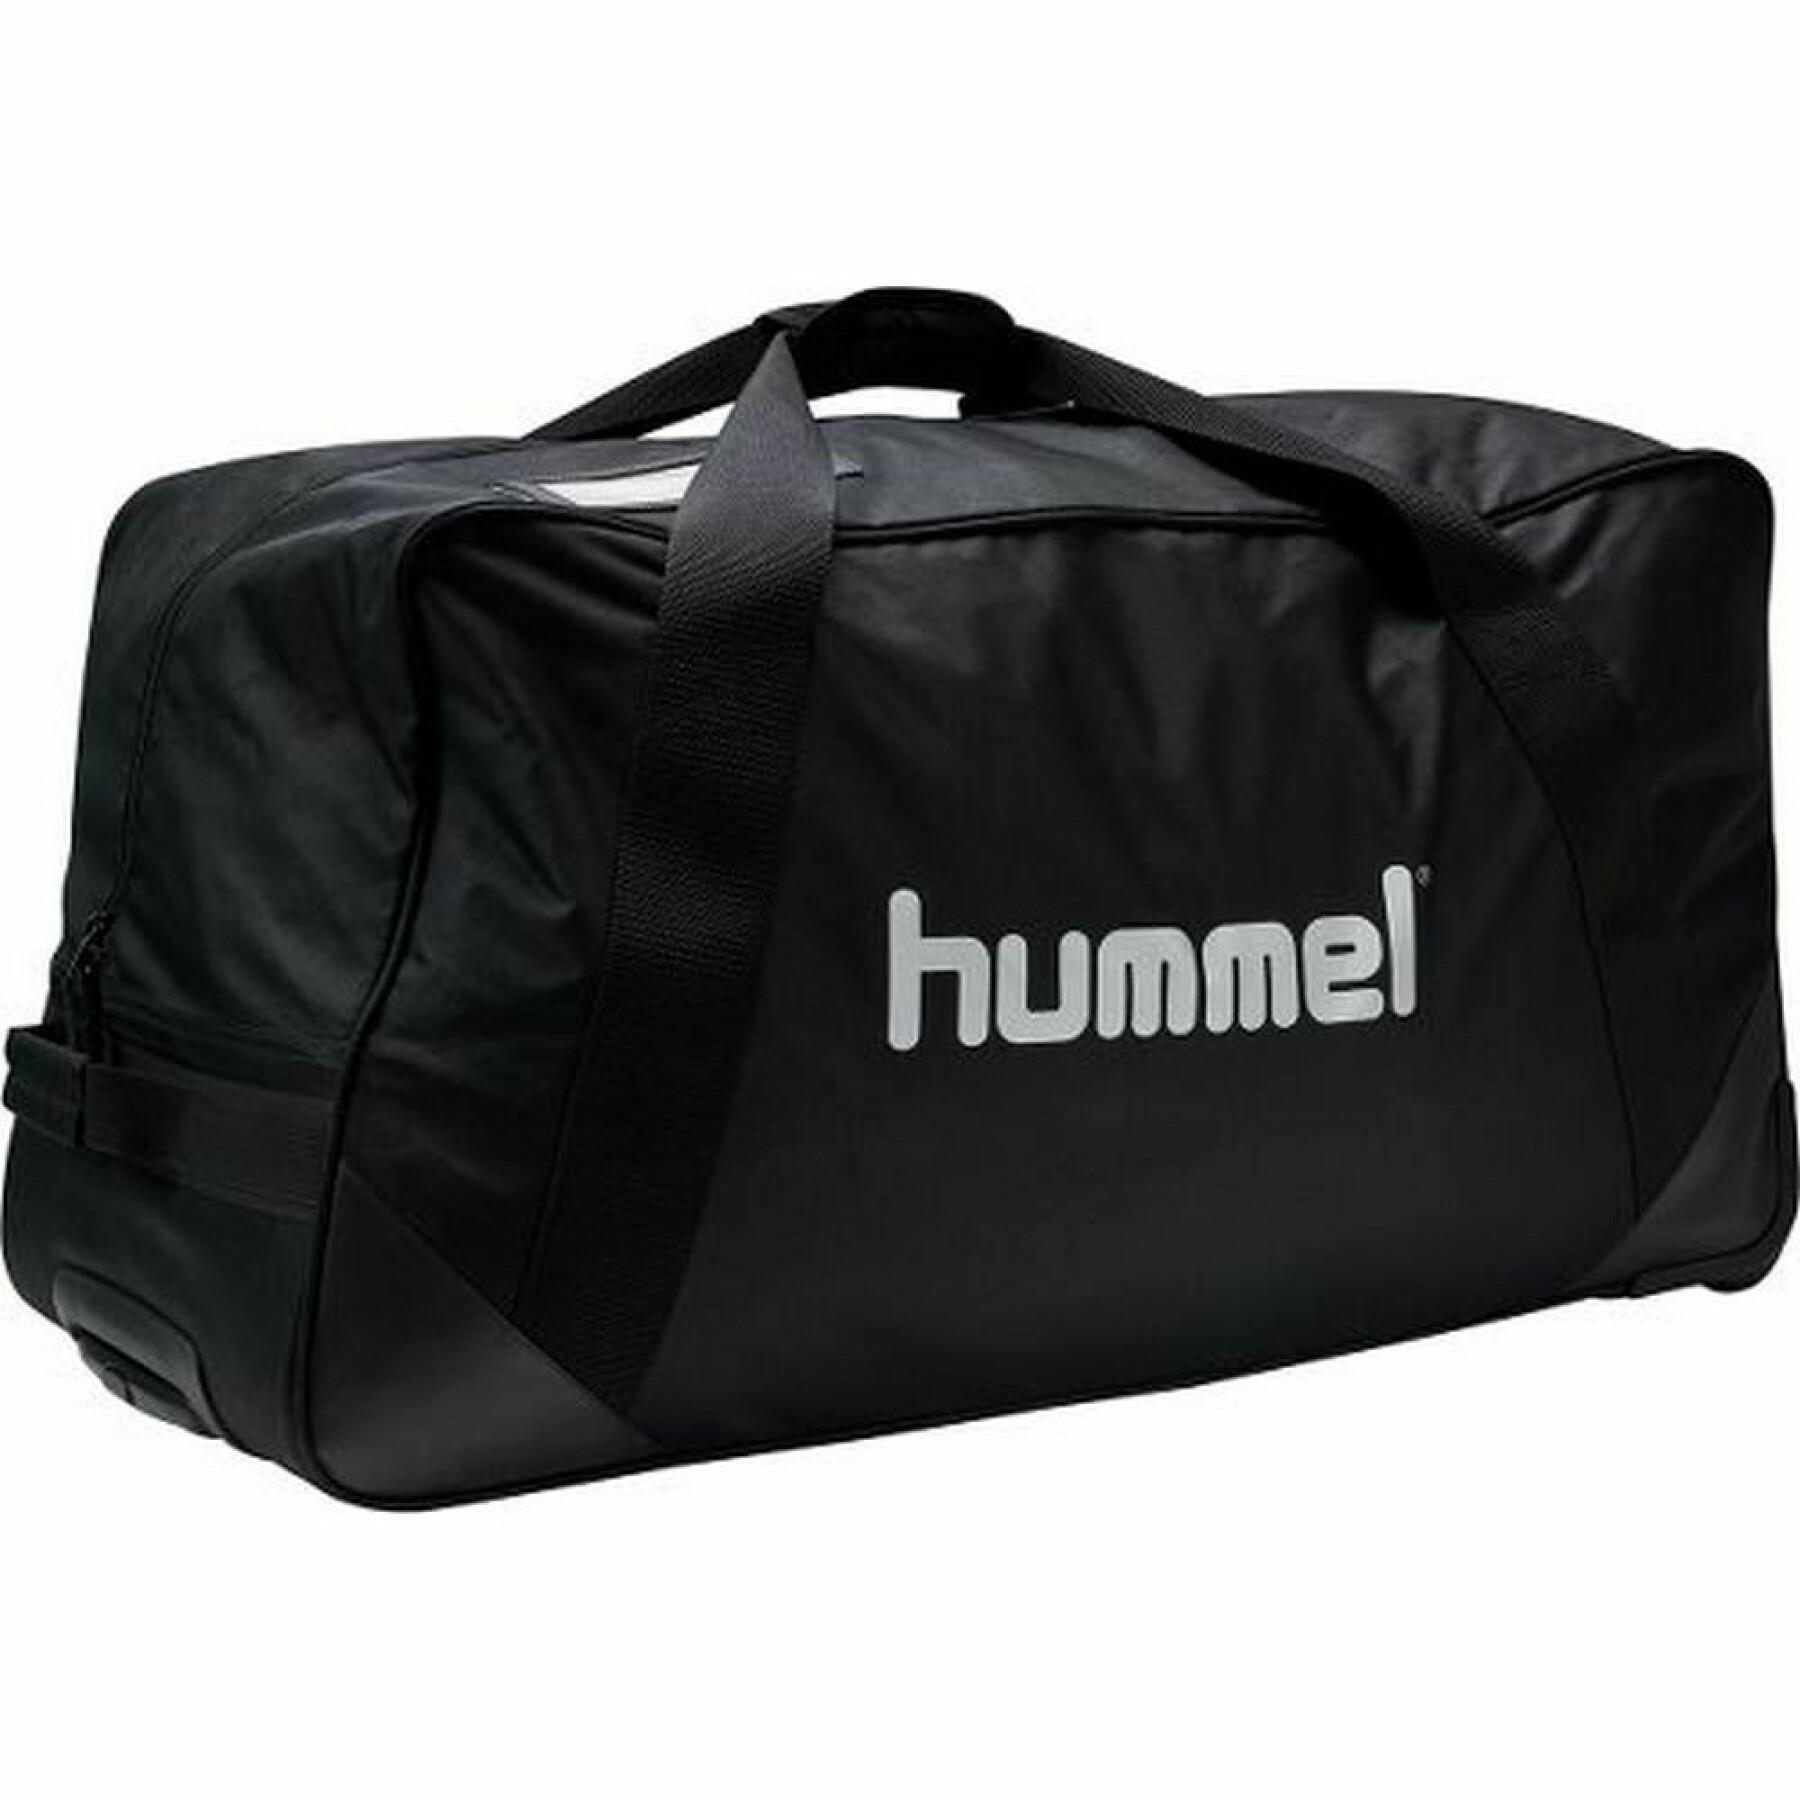 Sports bag Hummel Team Trolley